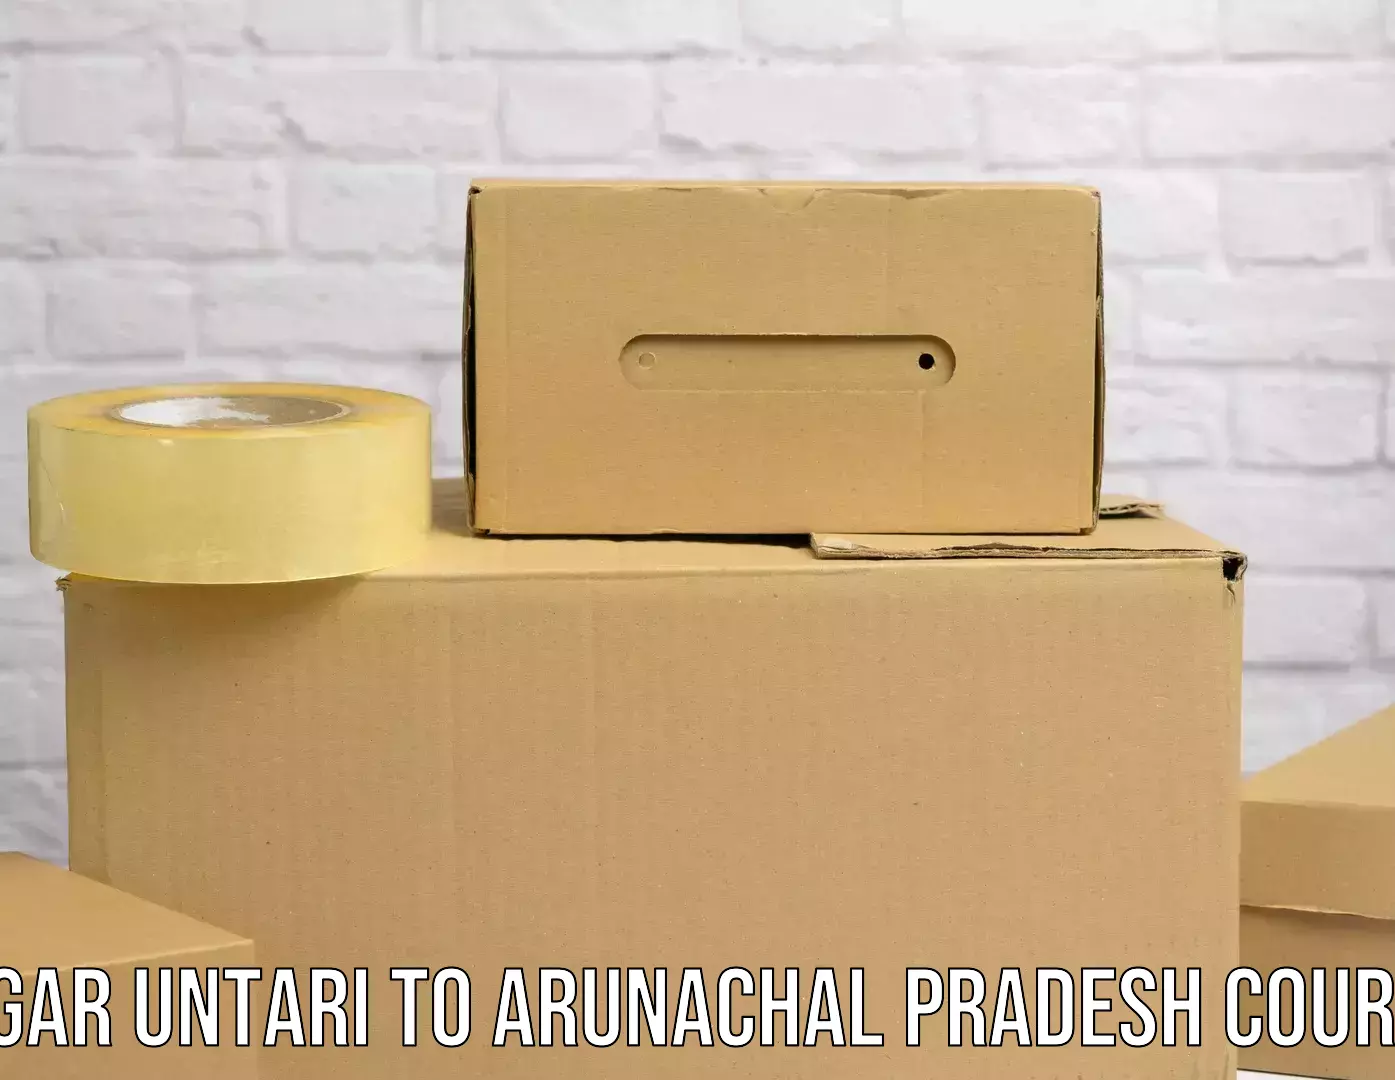 Multi-national courier services Nagar Untari to Arunachal Pradesh